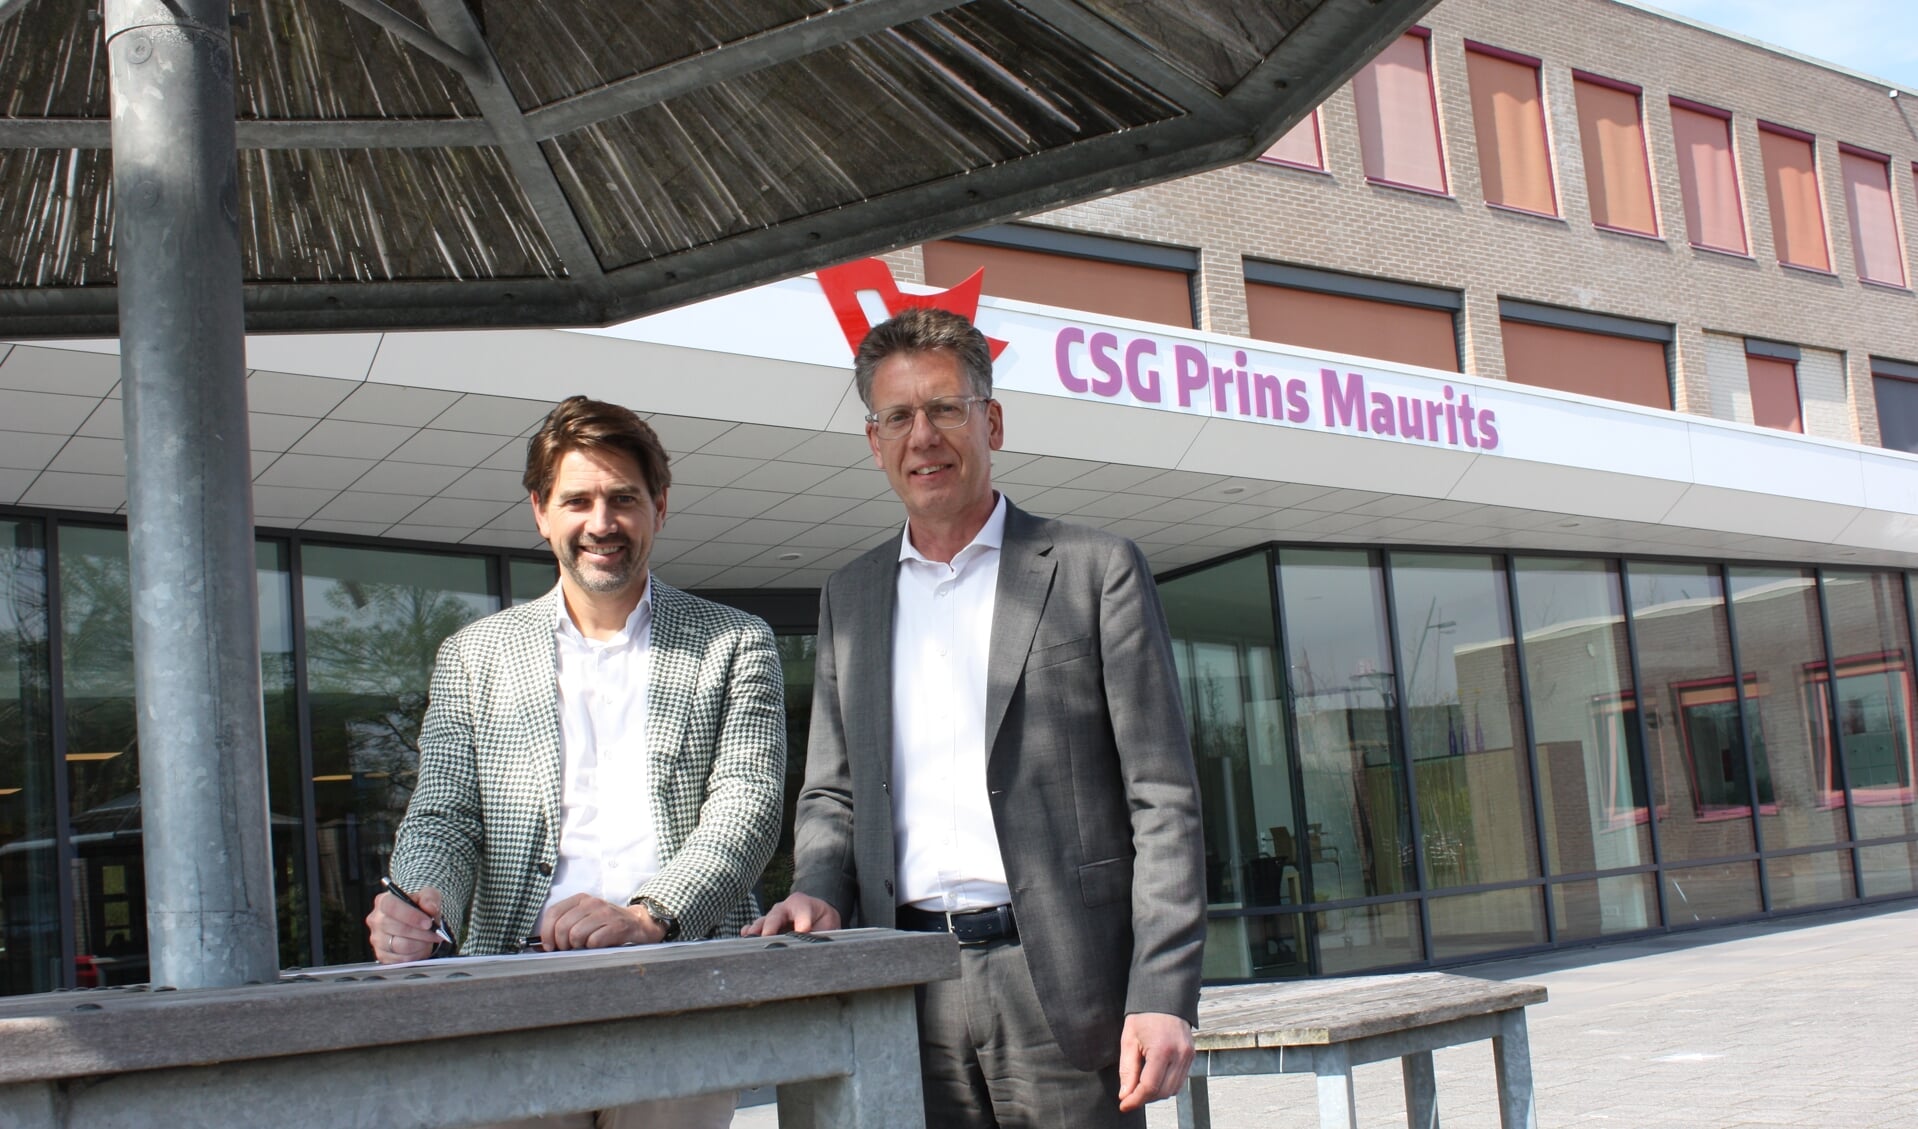 Mark-Jan Koldijk van DWT Groep (links) en Albert van Heinsberg van de CSG Prins Maurits ondertekenen het contract.